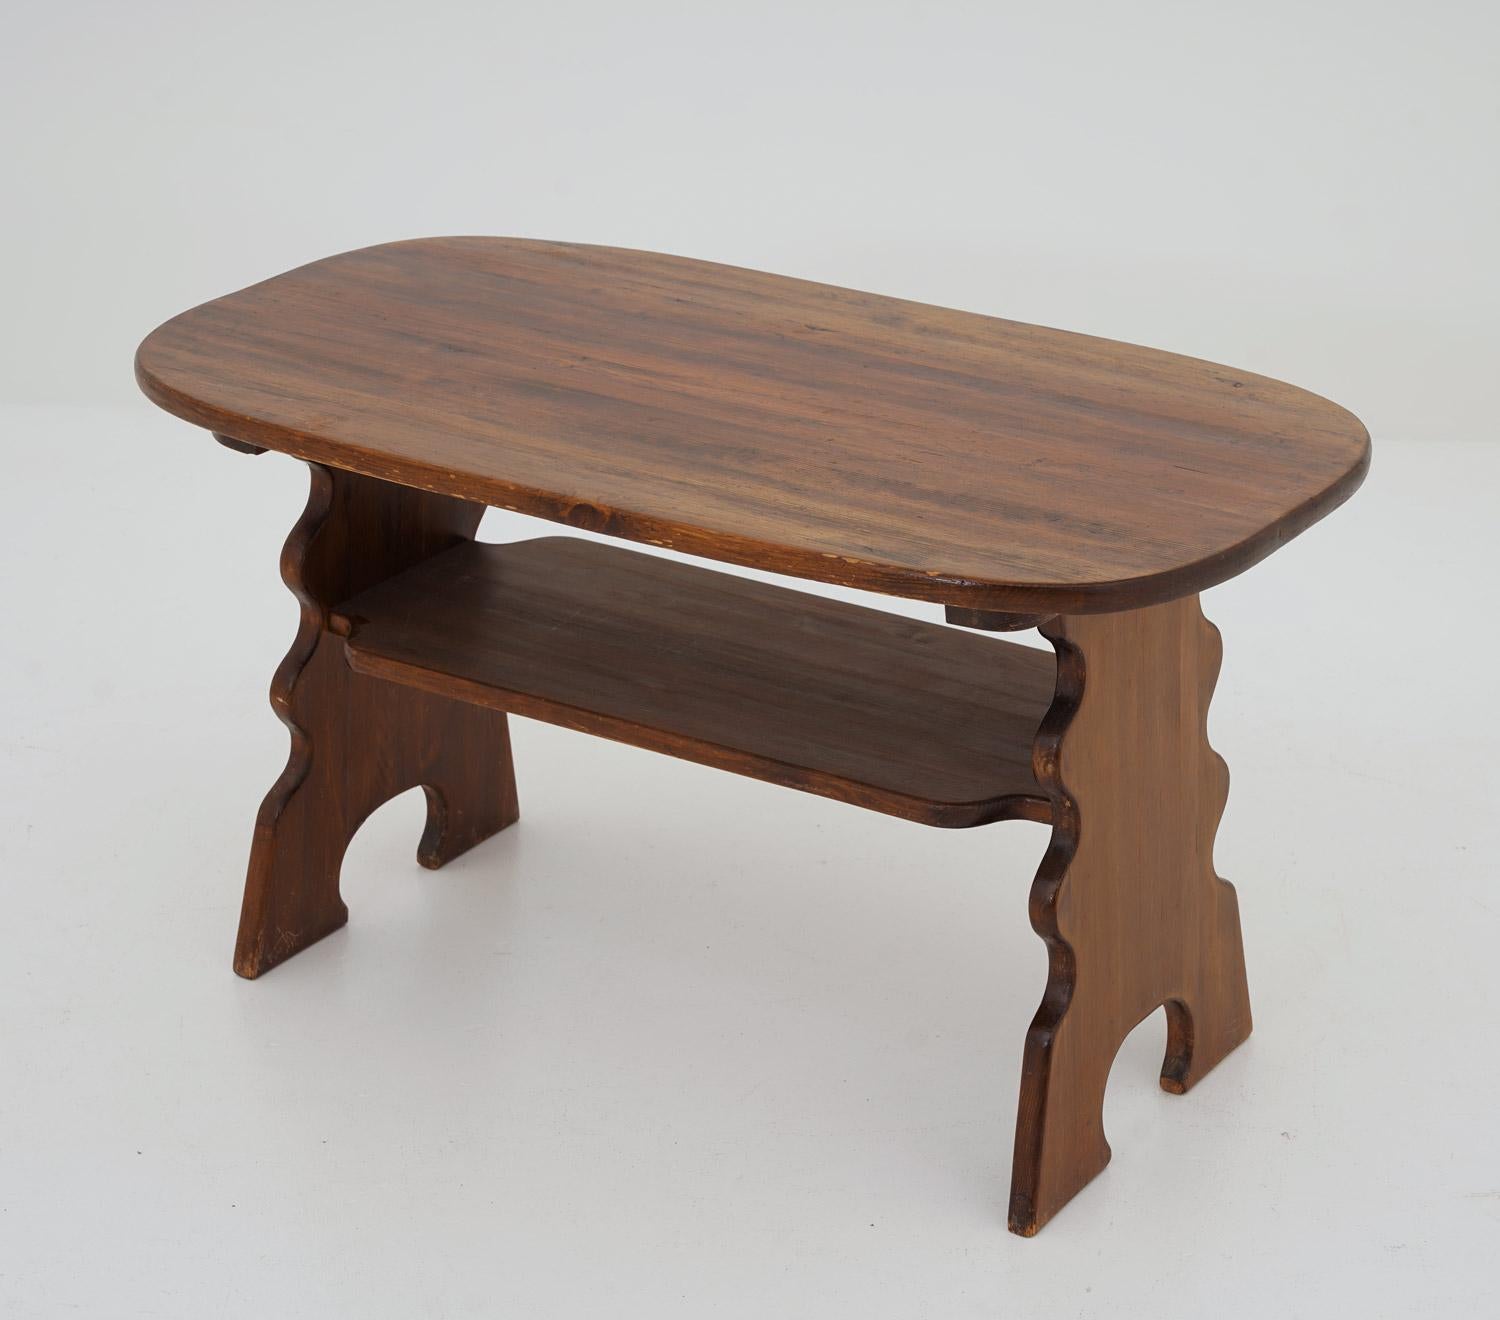 Schöner Beistelltisch von Bo Fjæstad, Schweden.
Dieser Studiotisch ist ein großartiges Beispiel für Hüttenmöbel aus Kiefernholz, die während der frühen Moderne in Schweden unter anderem von Axel Einar Hjorth und Carl Malmsten hergestellt wurden. Die